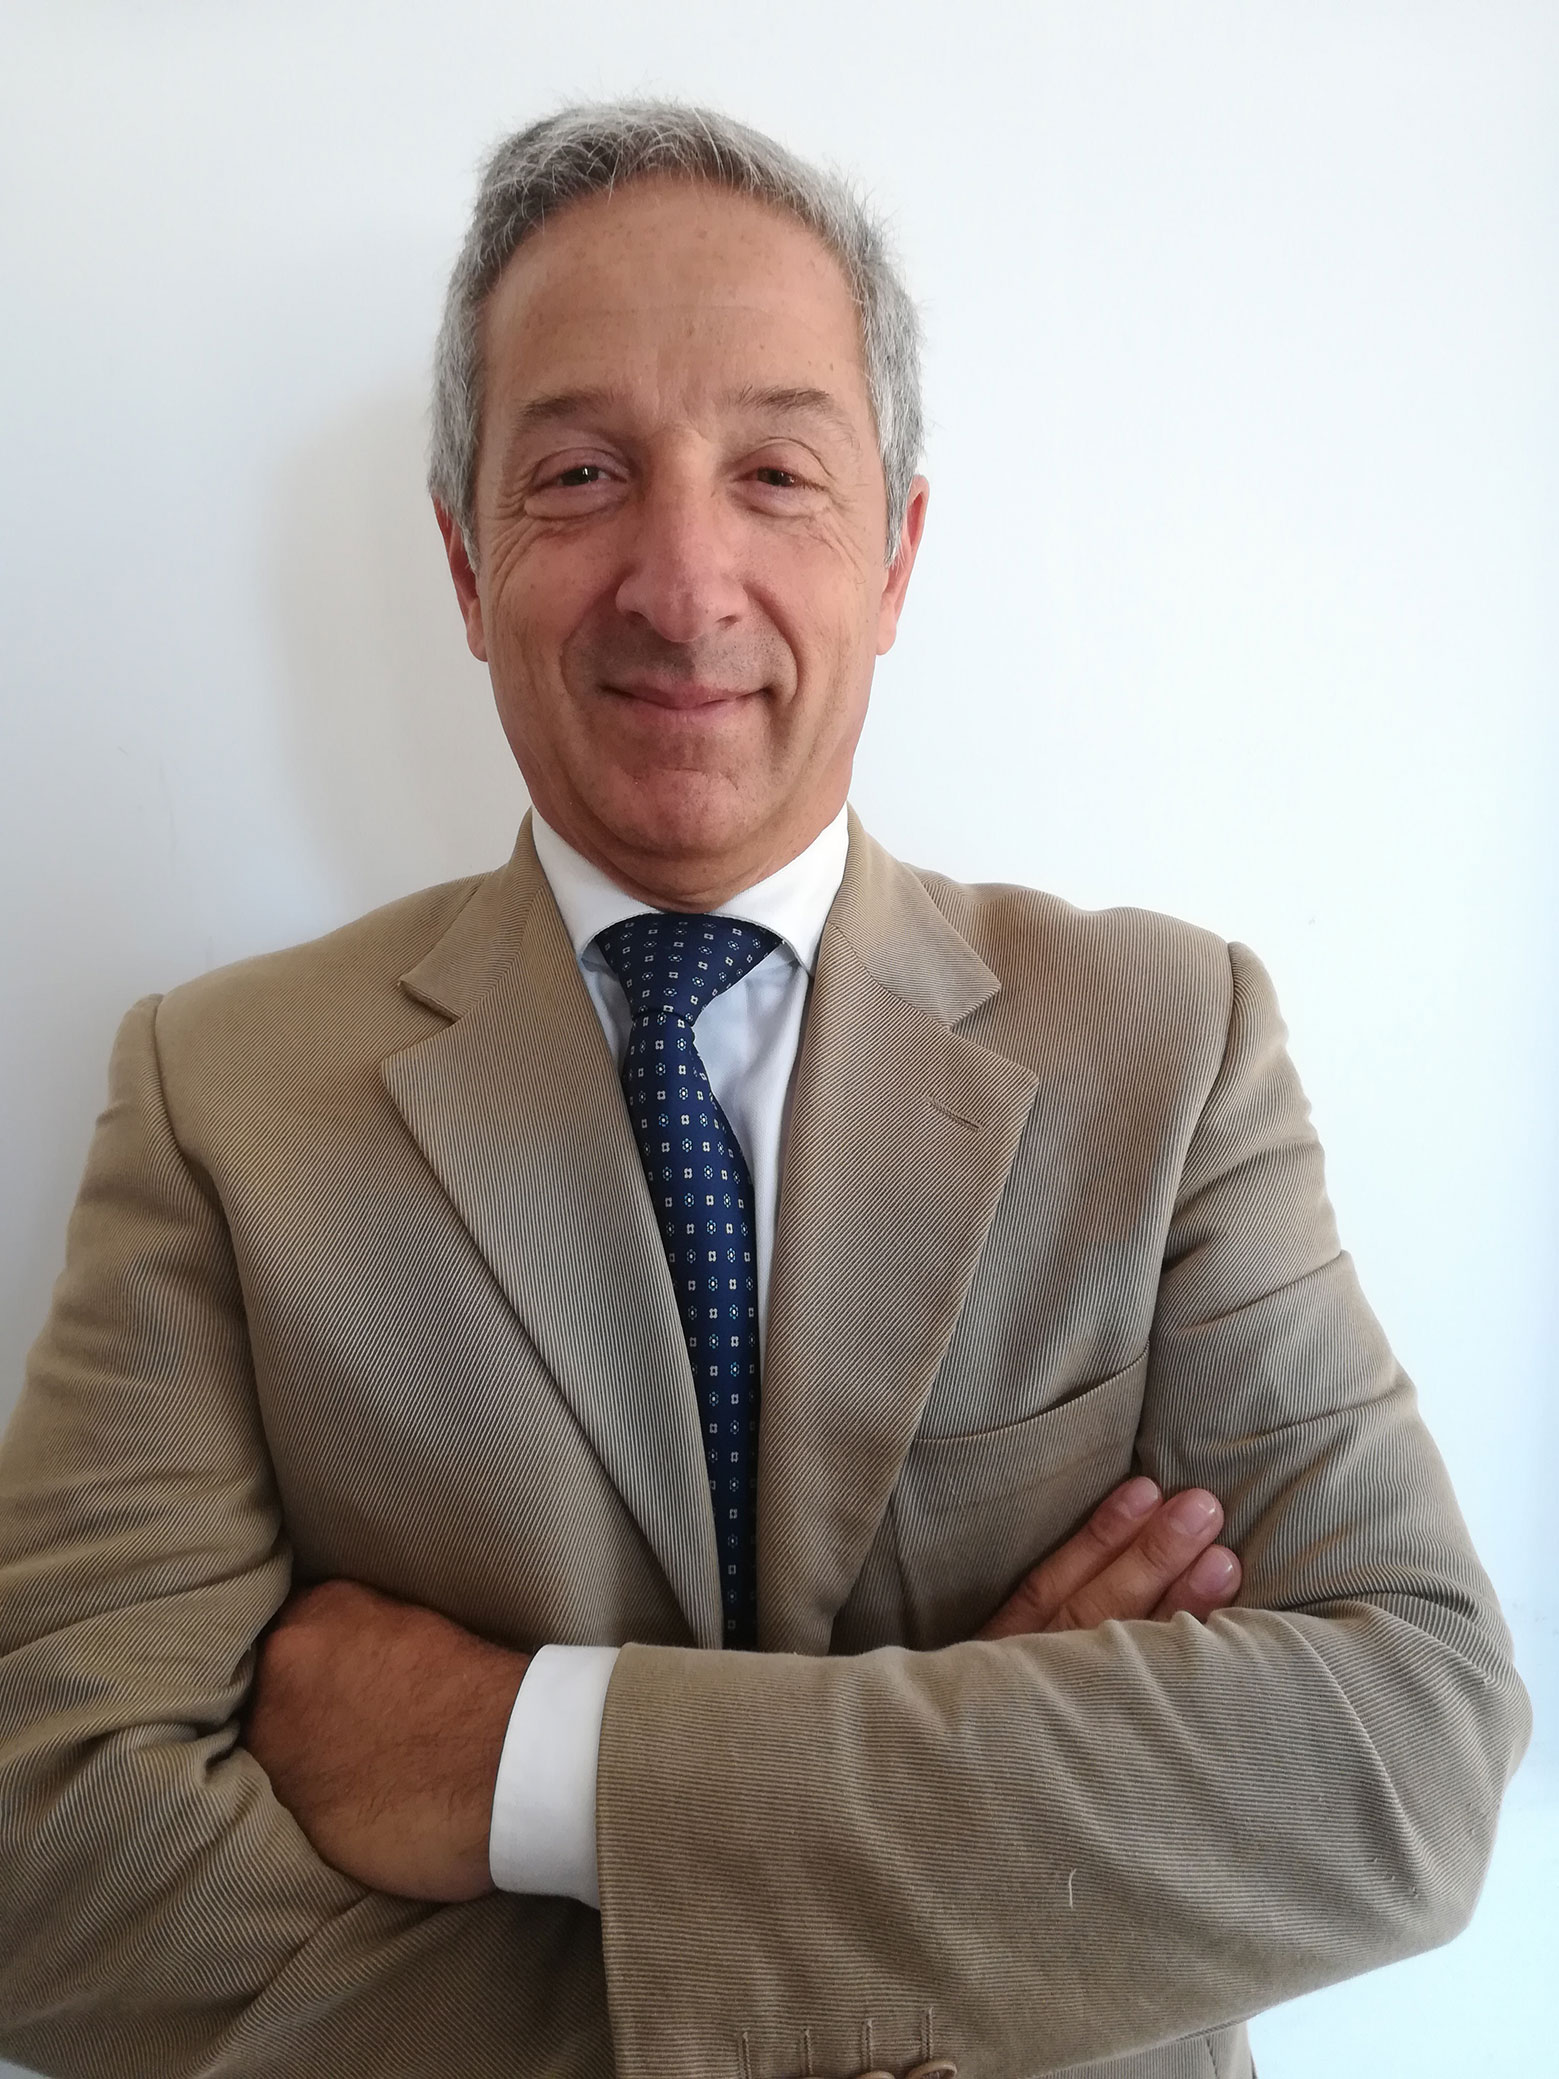 Fabio Pollice eletto Rettore dell’Università del Salento nel sessennio 2019/2025